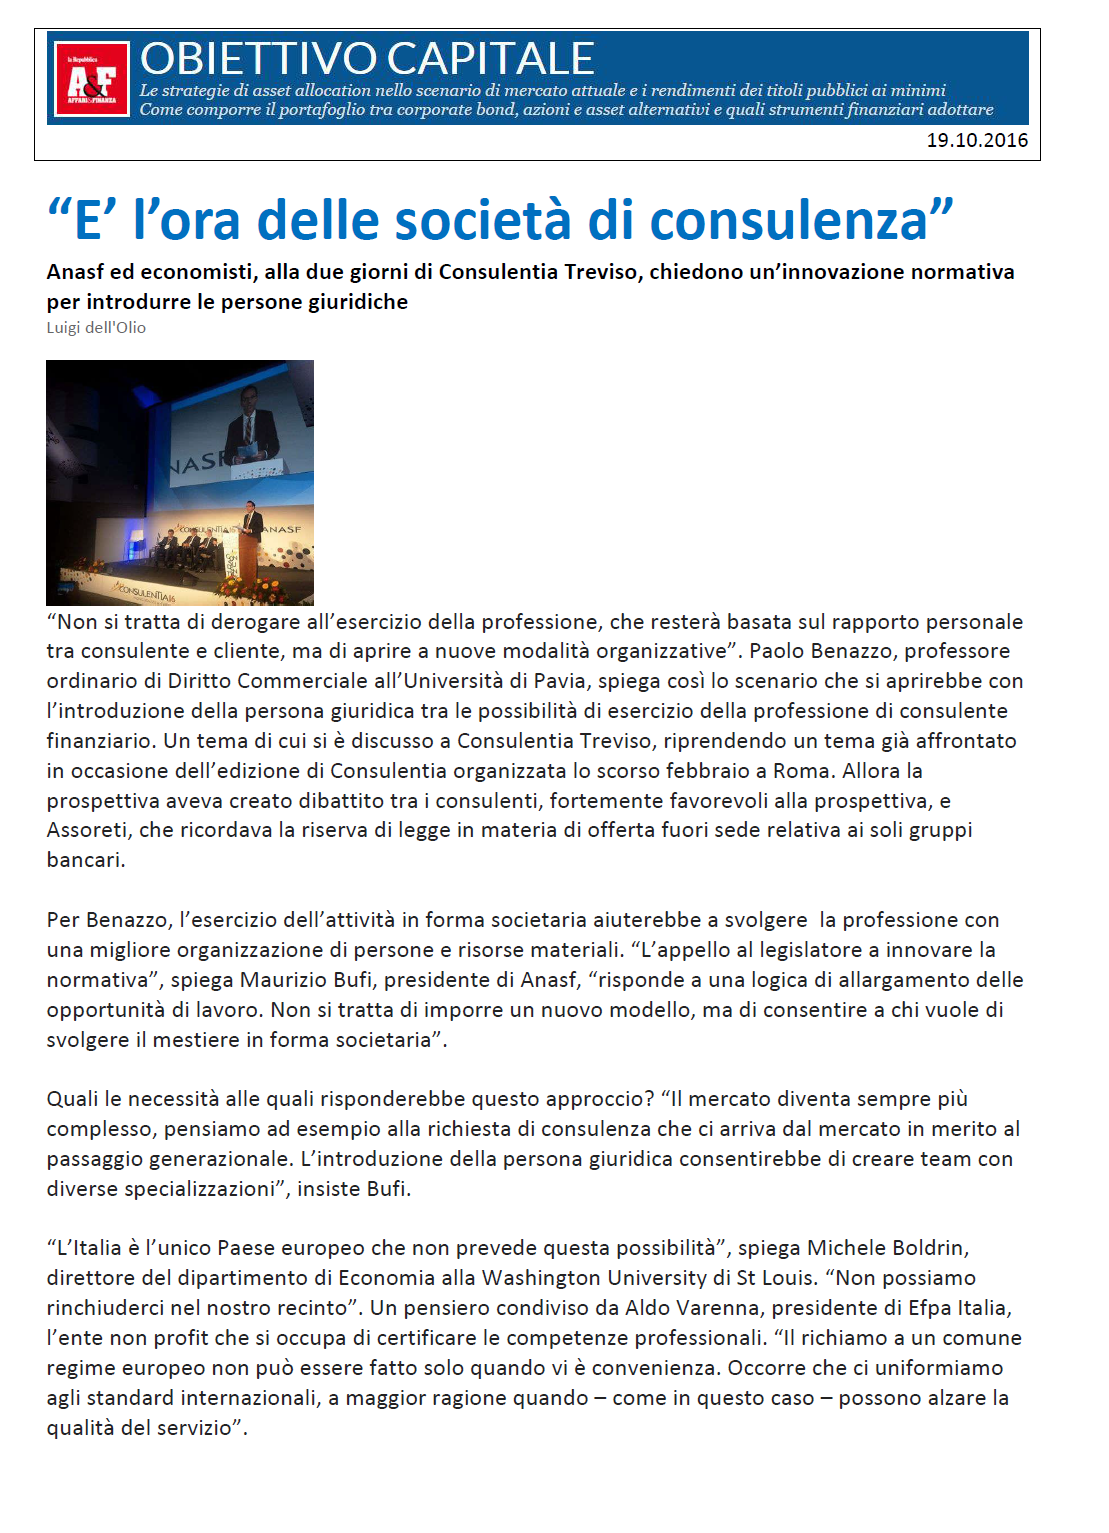 articolo ConsulenTia2016 Treviso su Obiettivo Capitale